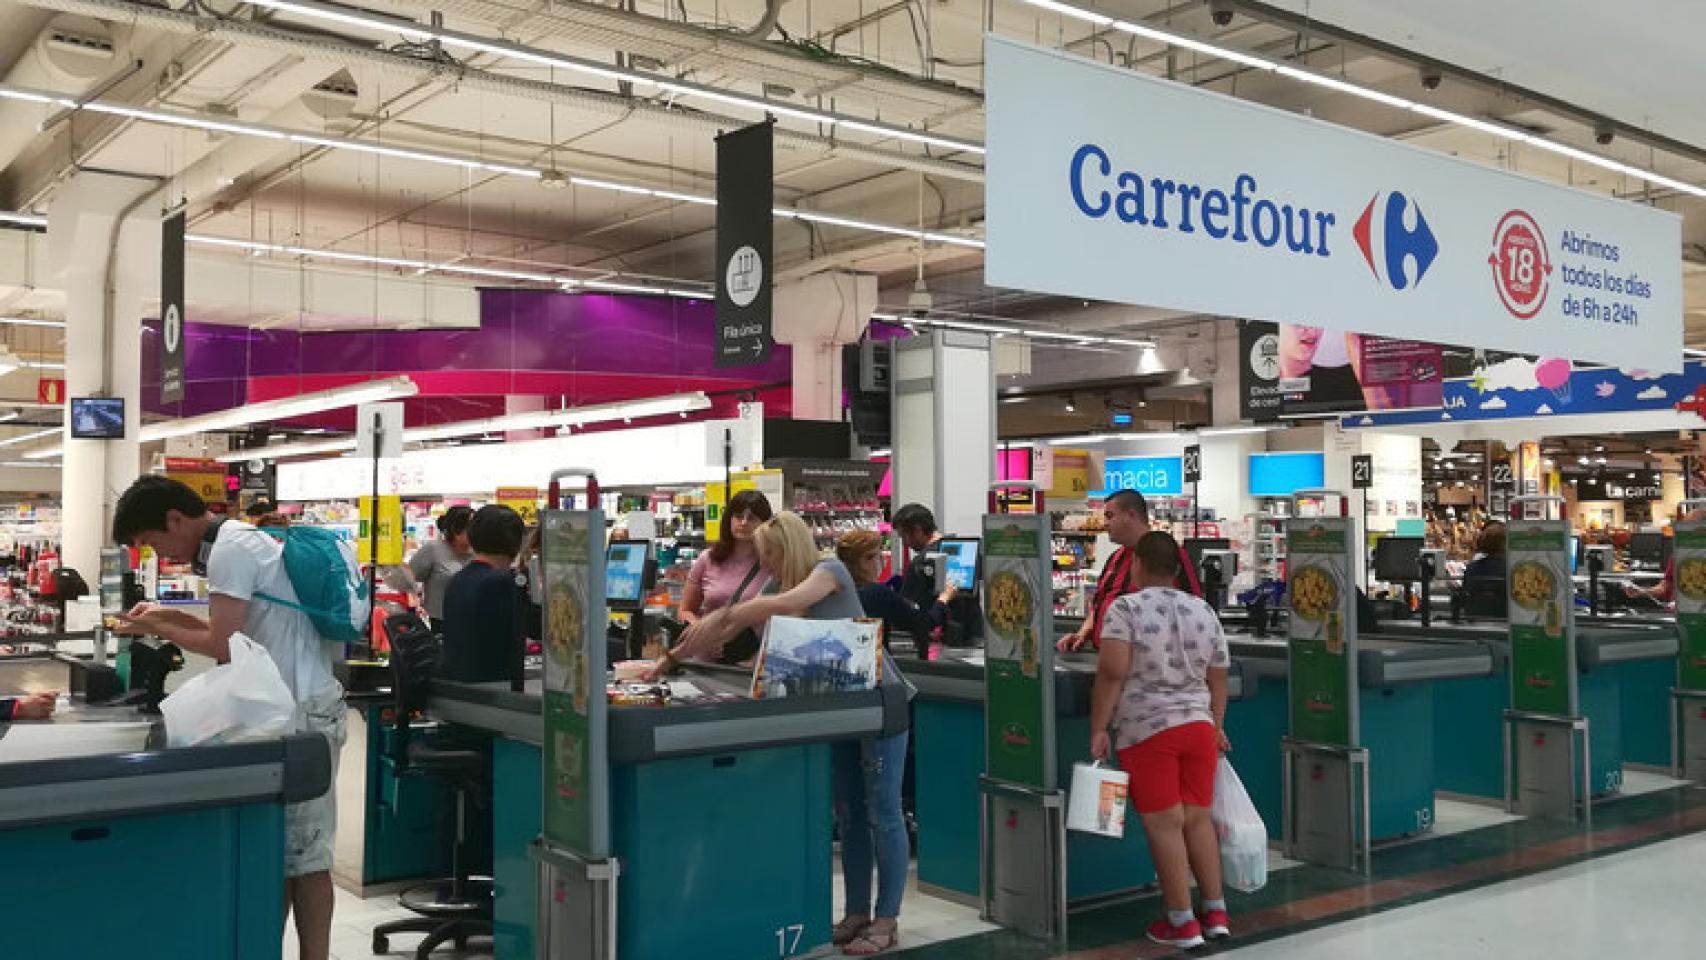 El revolucionario de Carrefour: sirve para la ropa y como por €